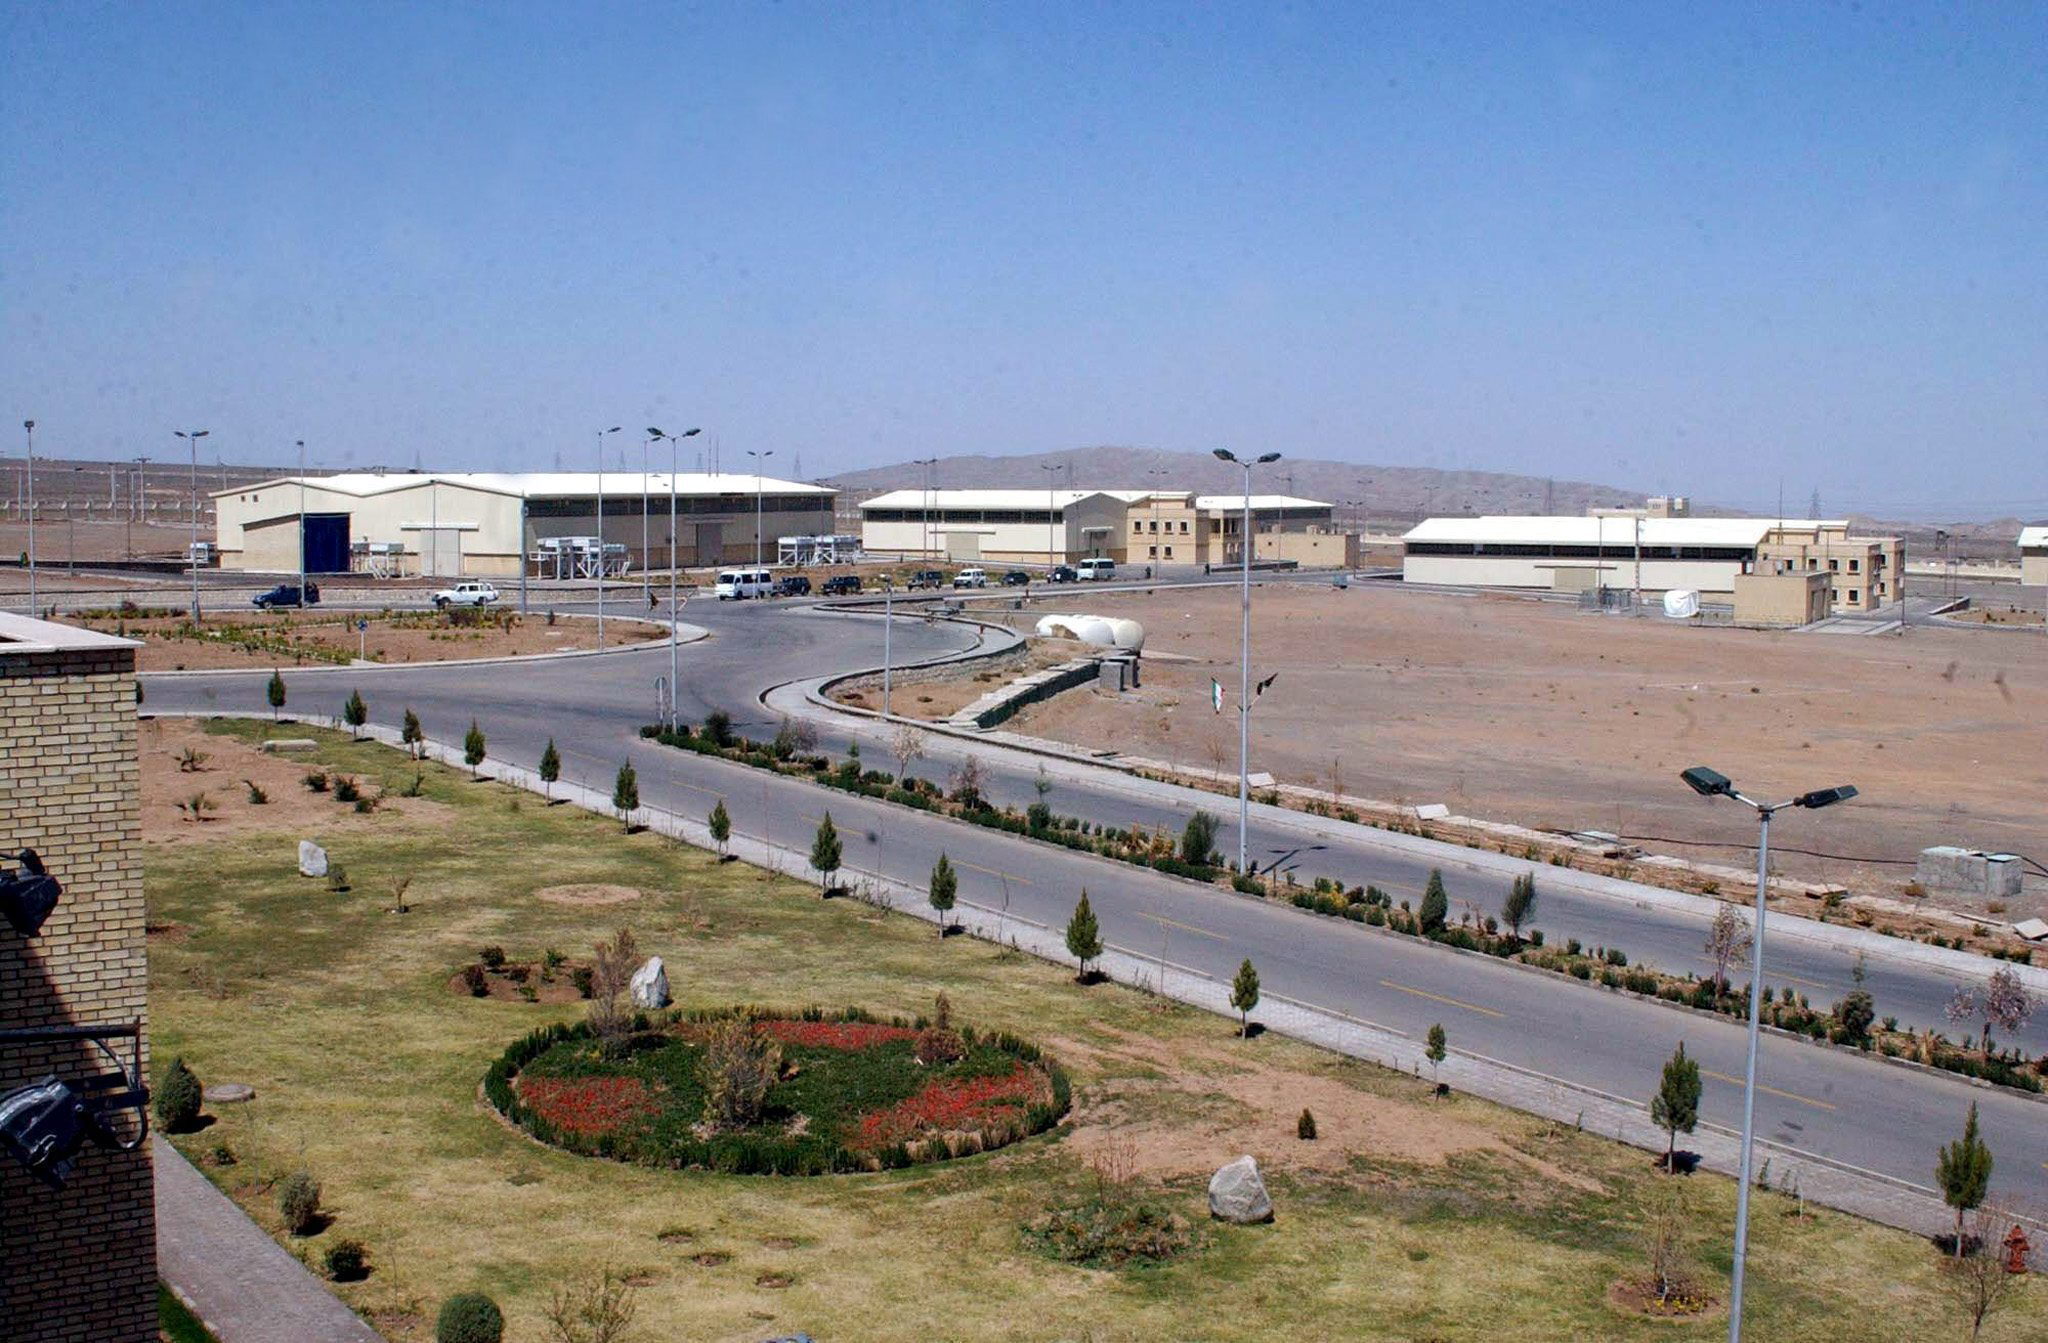 Vista del complejo de enriquecimiento de uranio Natanz, en Isfahan, centro de Irán (EFE/Archivo)
